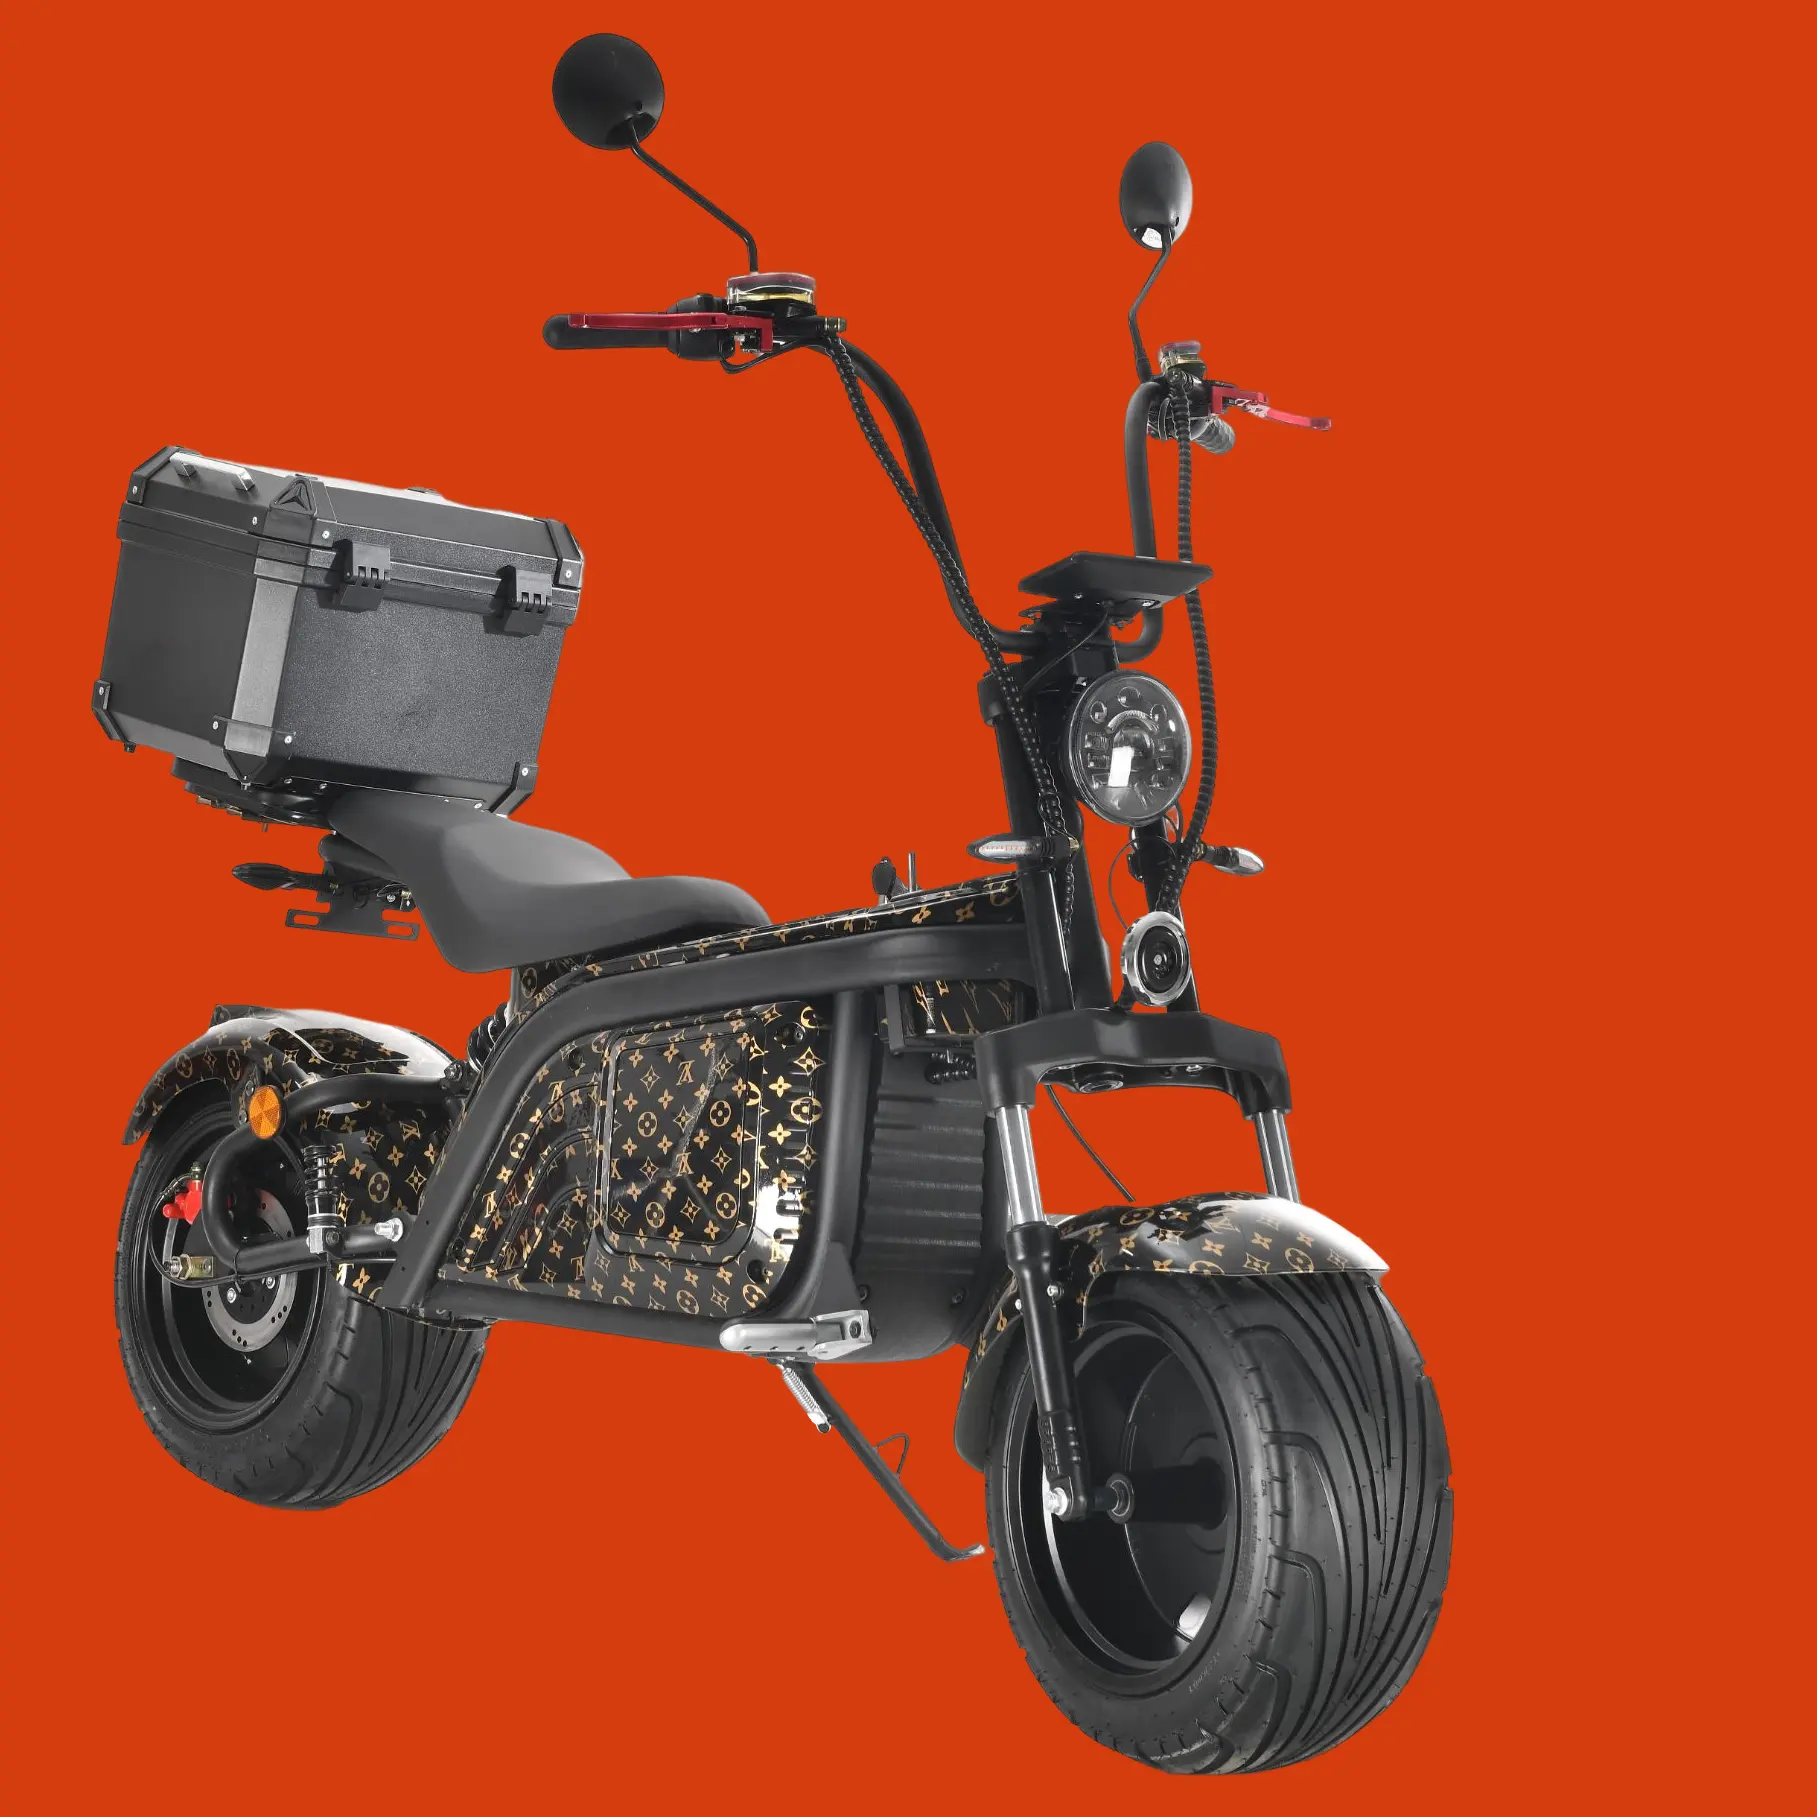 חדש מגמת מהיר חשמלי קטנועים מבוגרים עוצמה Off כביש מסגרת אופניים חשמליים 50 קמ"ש Citycoco ליתיום סוללה חשמלי Motot